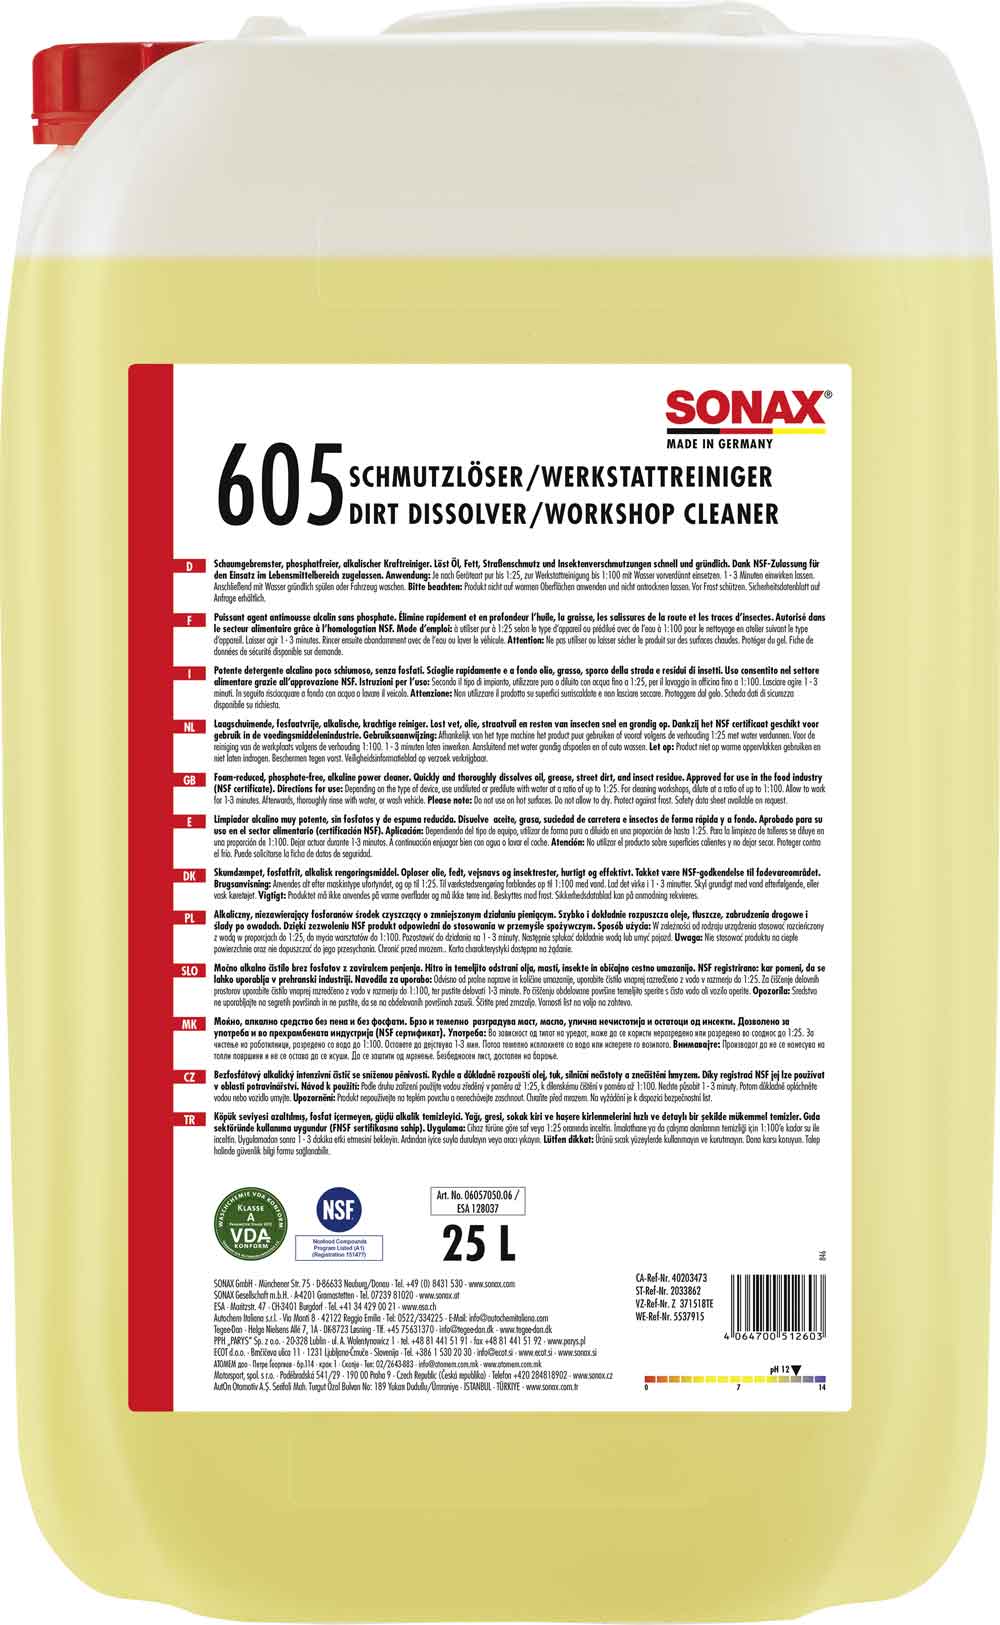 SONAX SchmutzLöser/Werkstatt Reiniger Hochdruckreiniger-Zusatz 25L